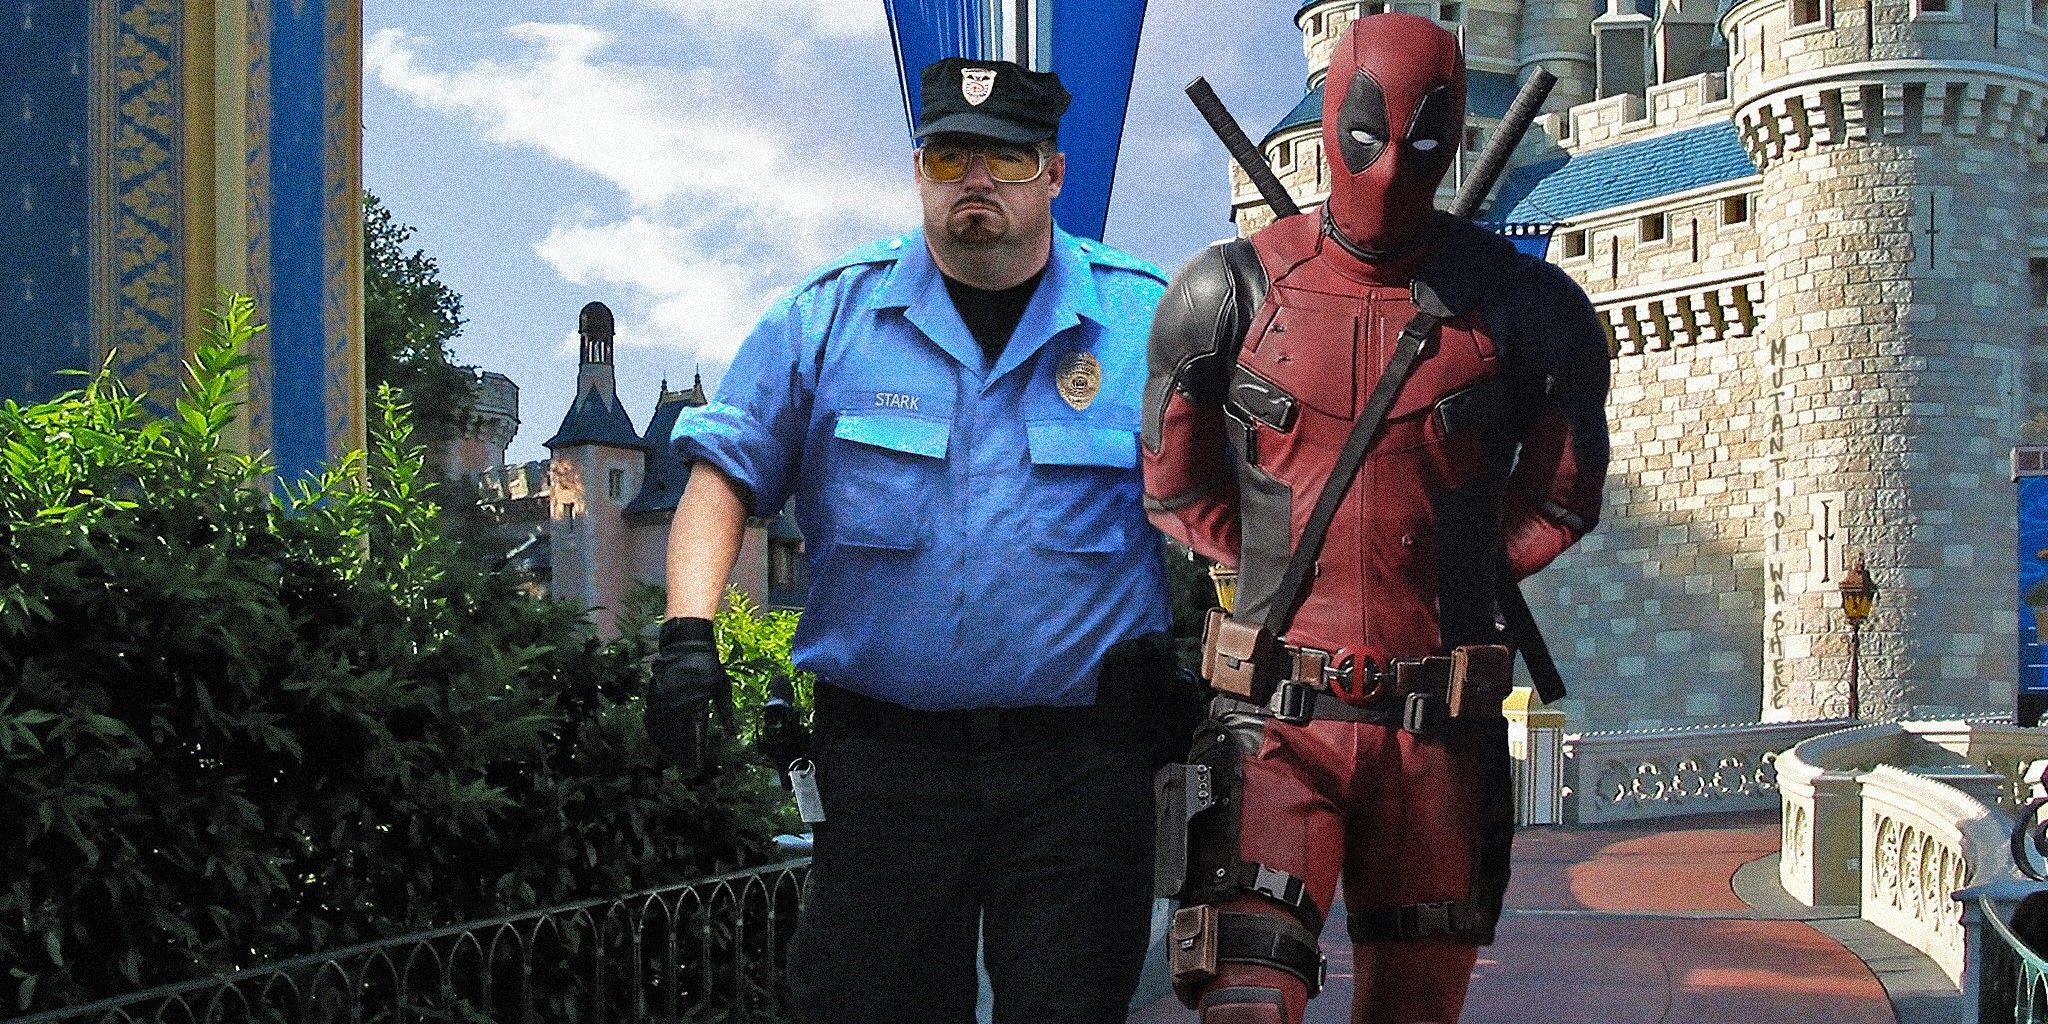 Deadpool arrested at Disney Land